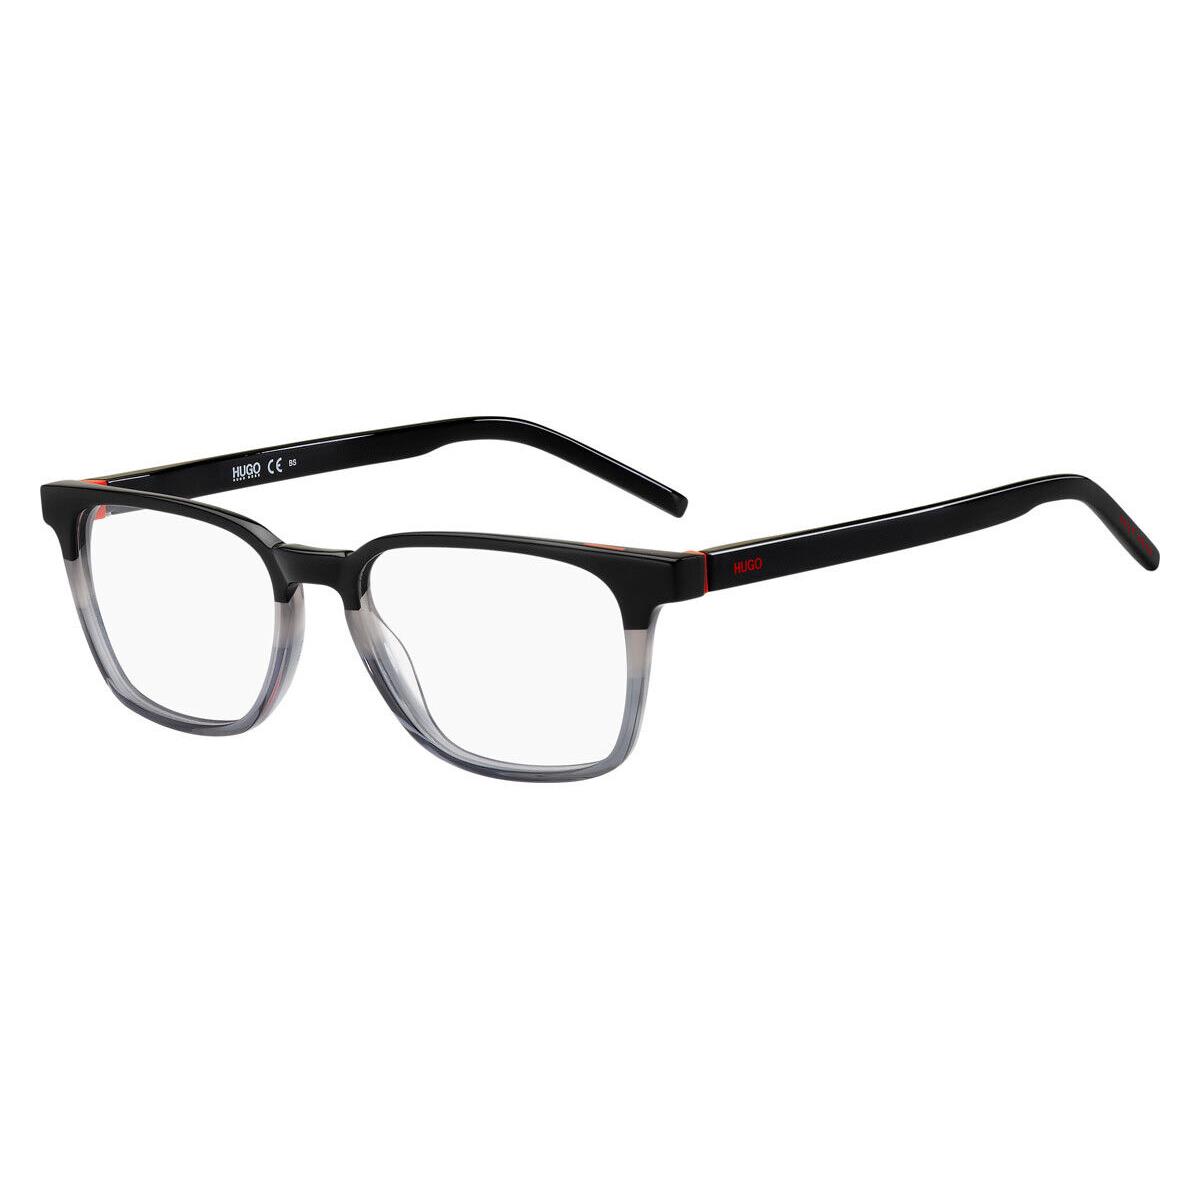 Hugo Boss 1130 Eyeglasses Men Black Gray Rectangle 52mm